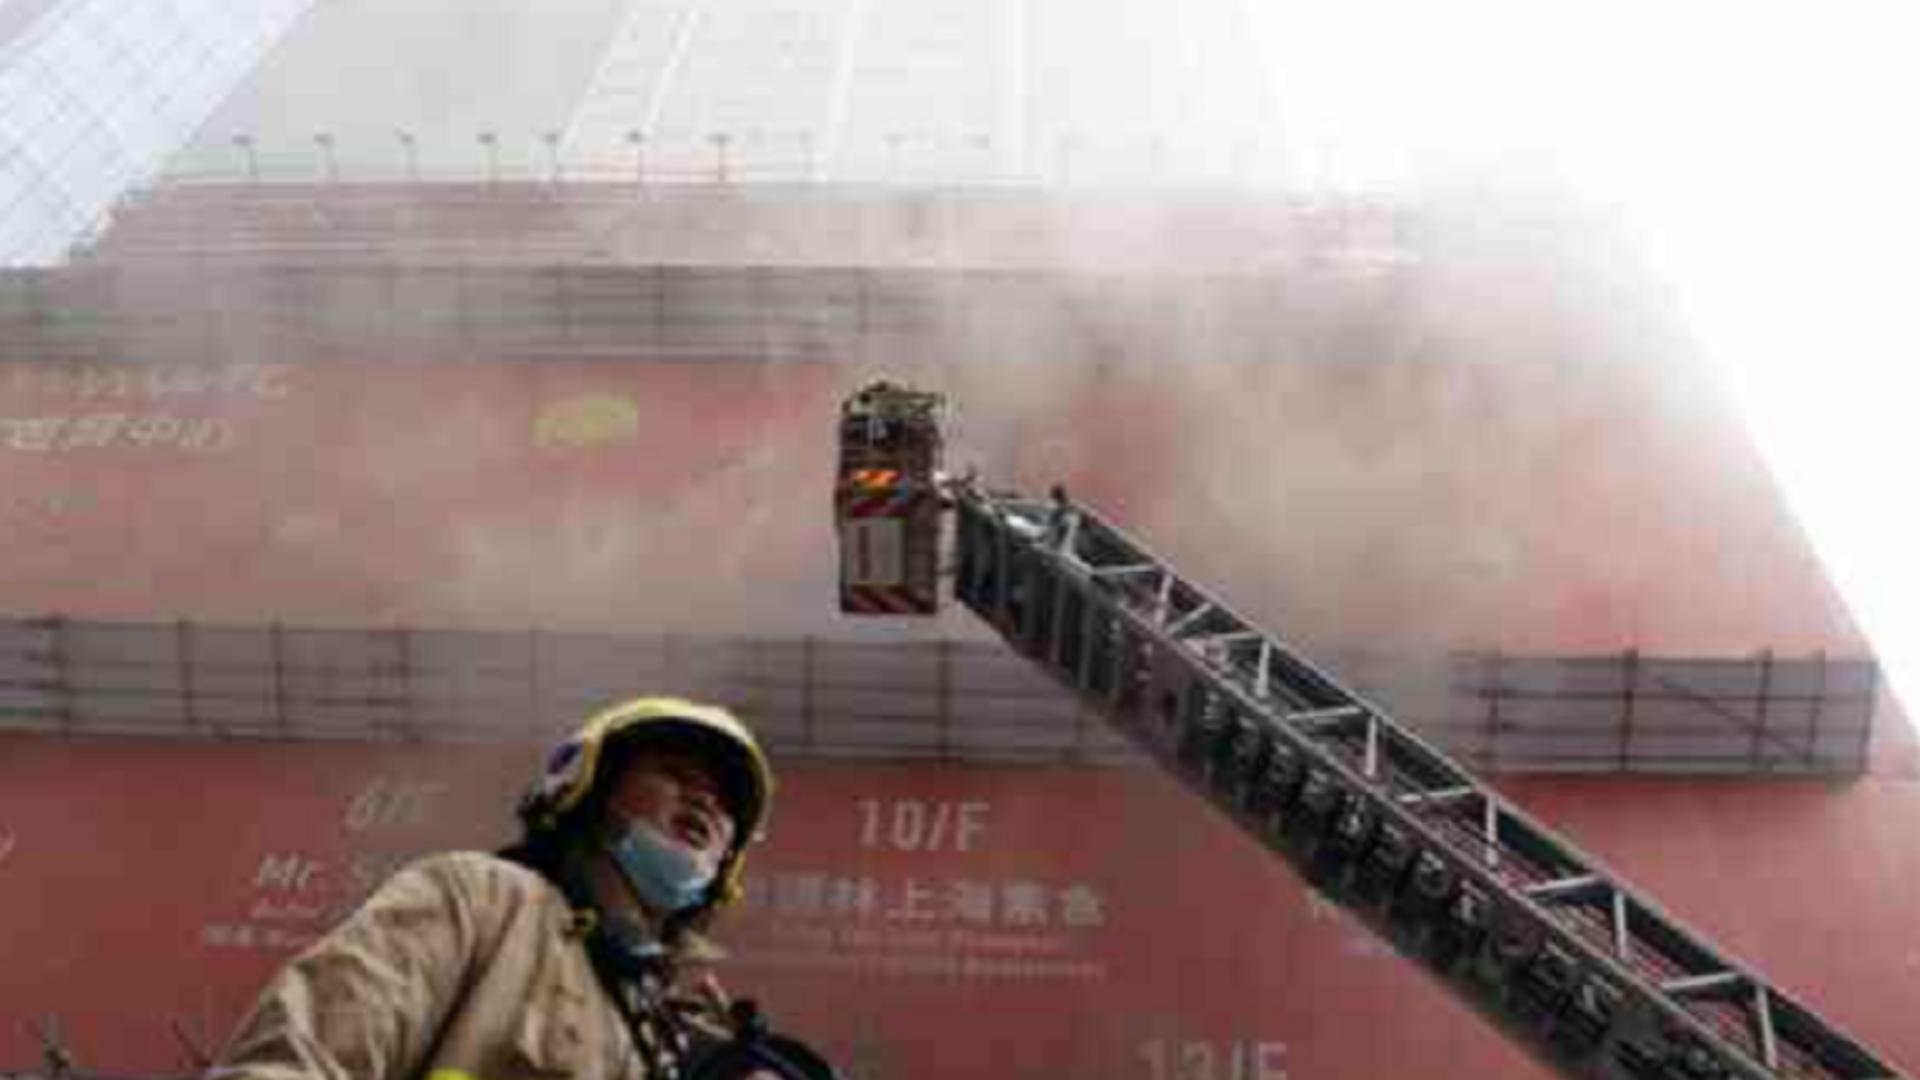 Incendiu WTC China FOTO:China Post